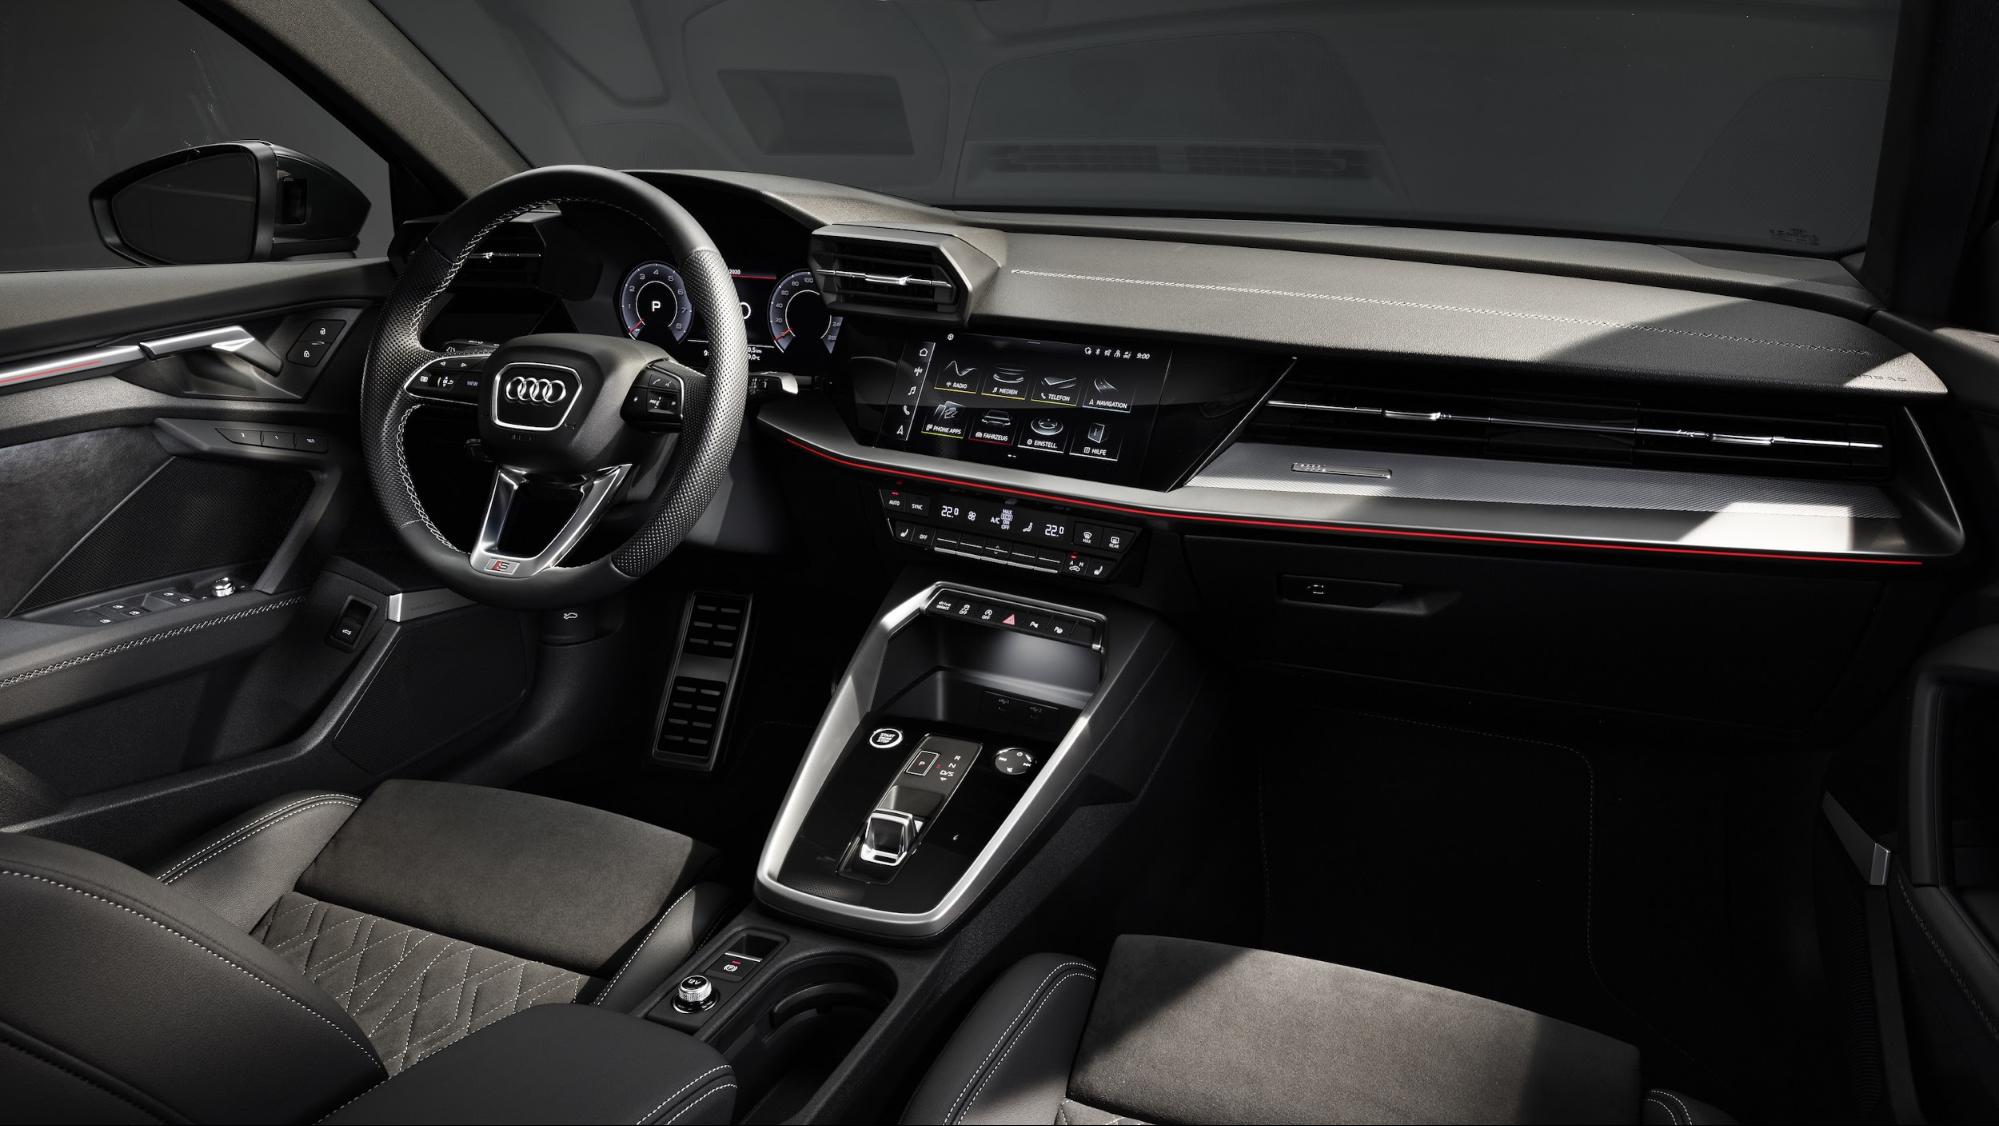 Nouvelle Audi A3 berline : essai, prix, date de sortie et fiche technique